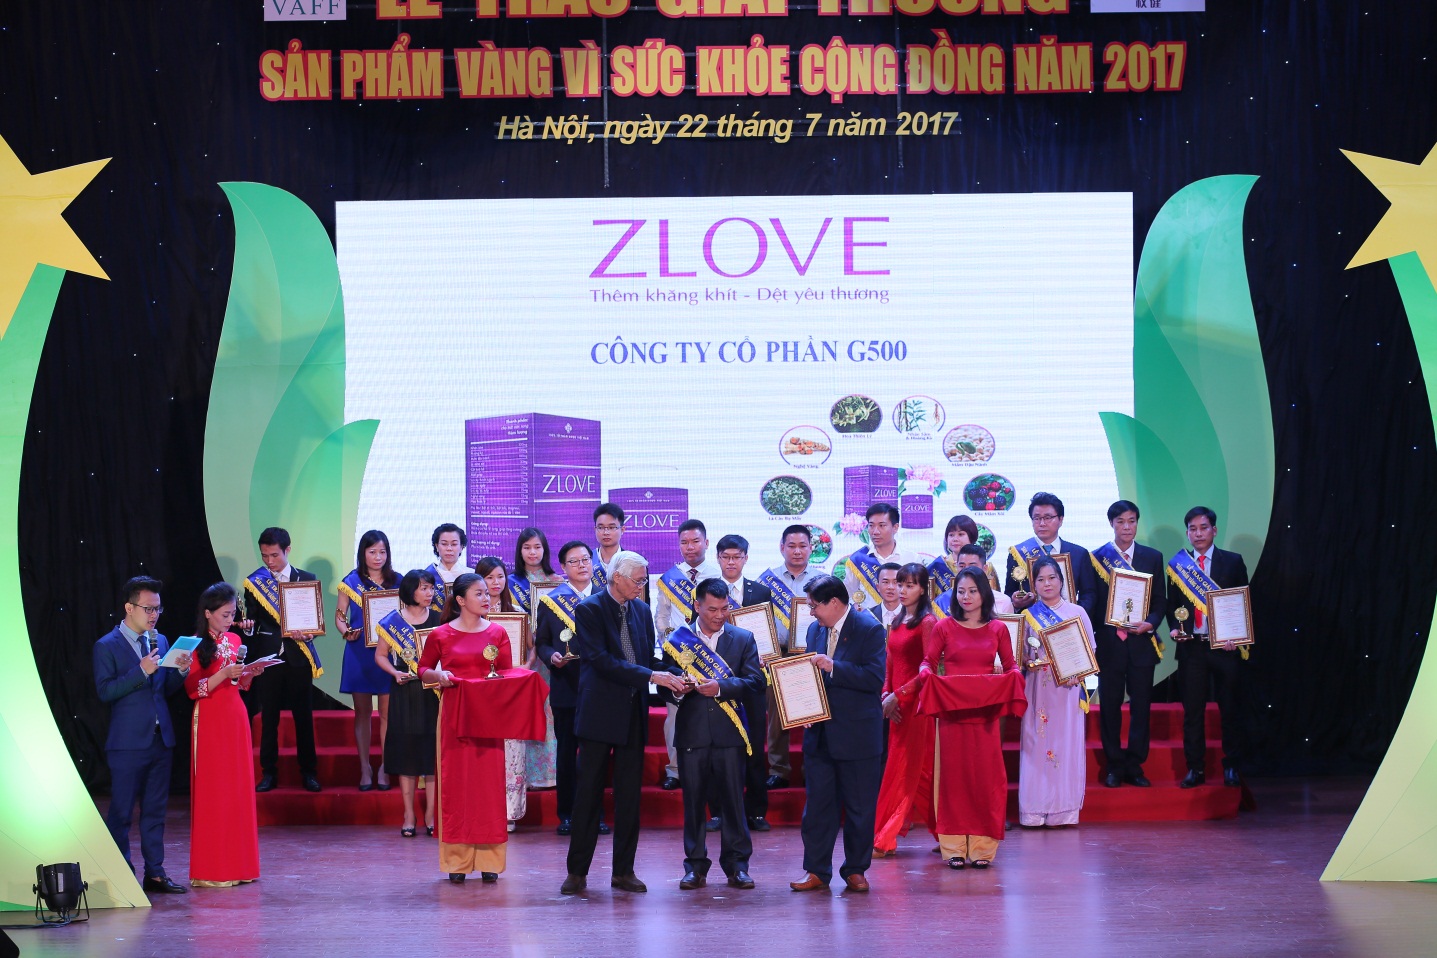 zlove giải thưởng, danh hiệu sản phẩm vàng vì sức khỏe cộng đồng